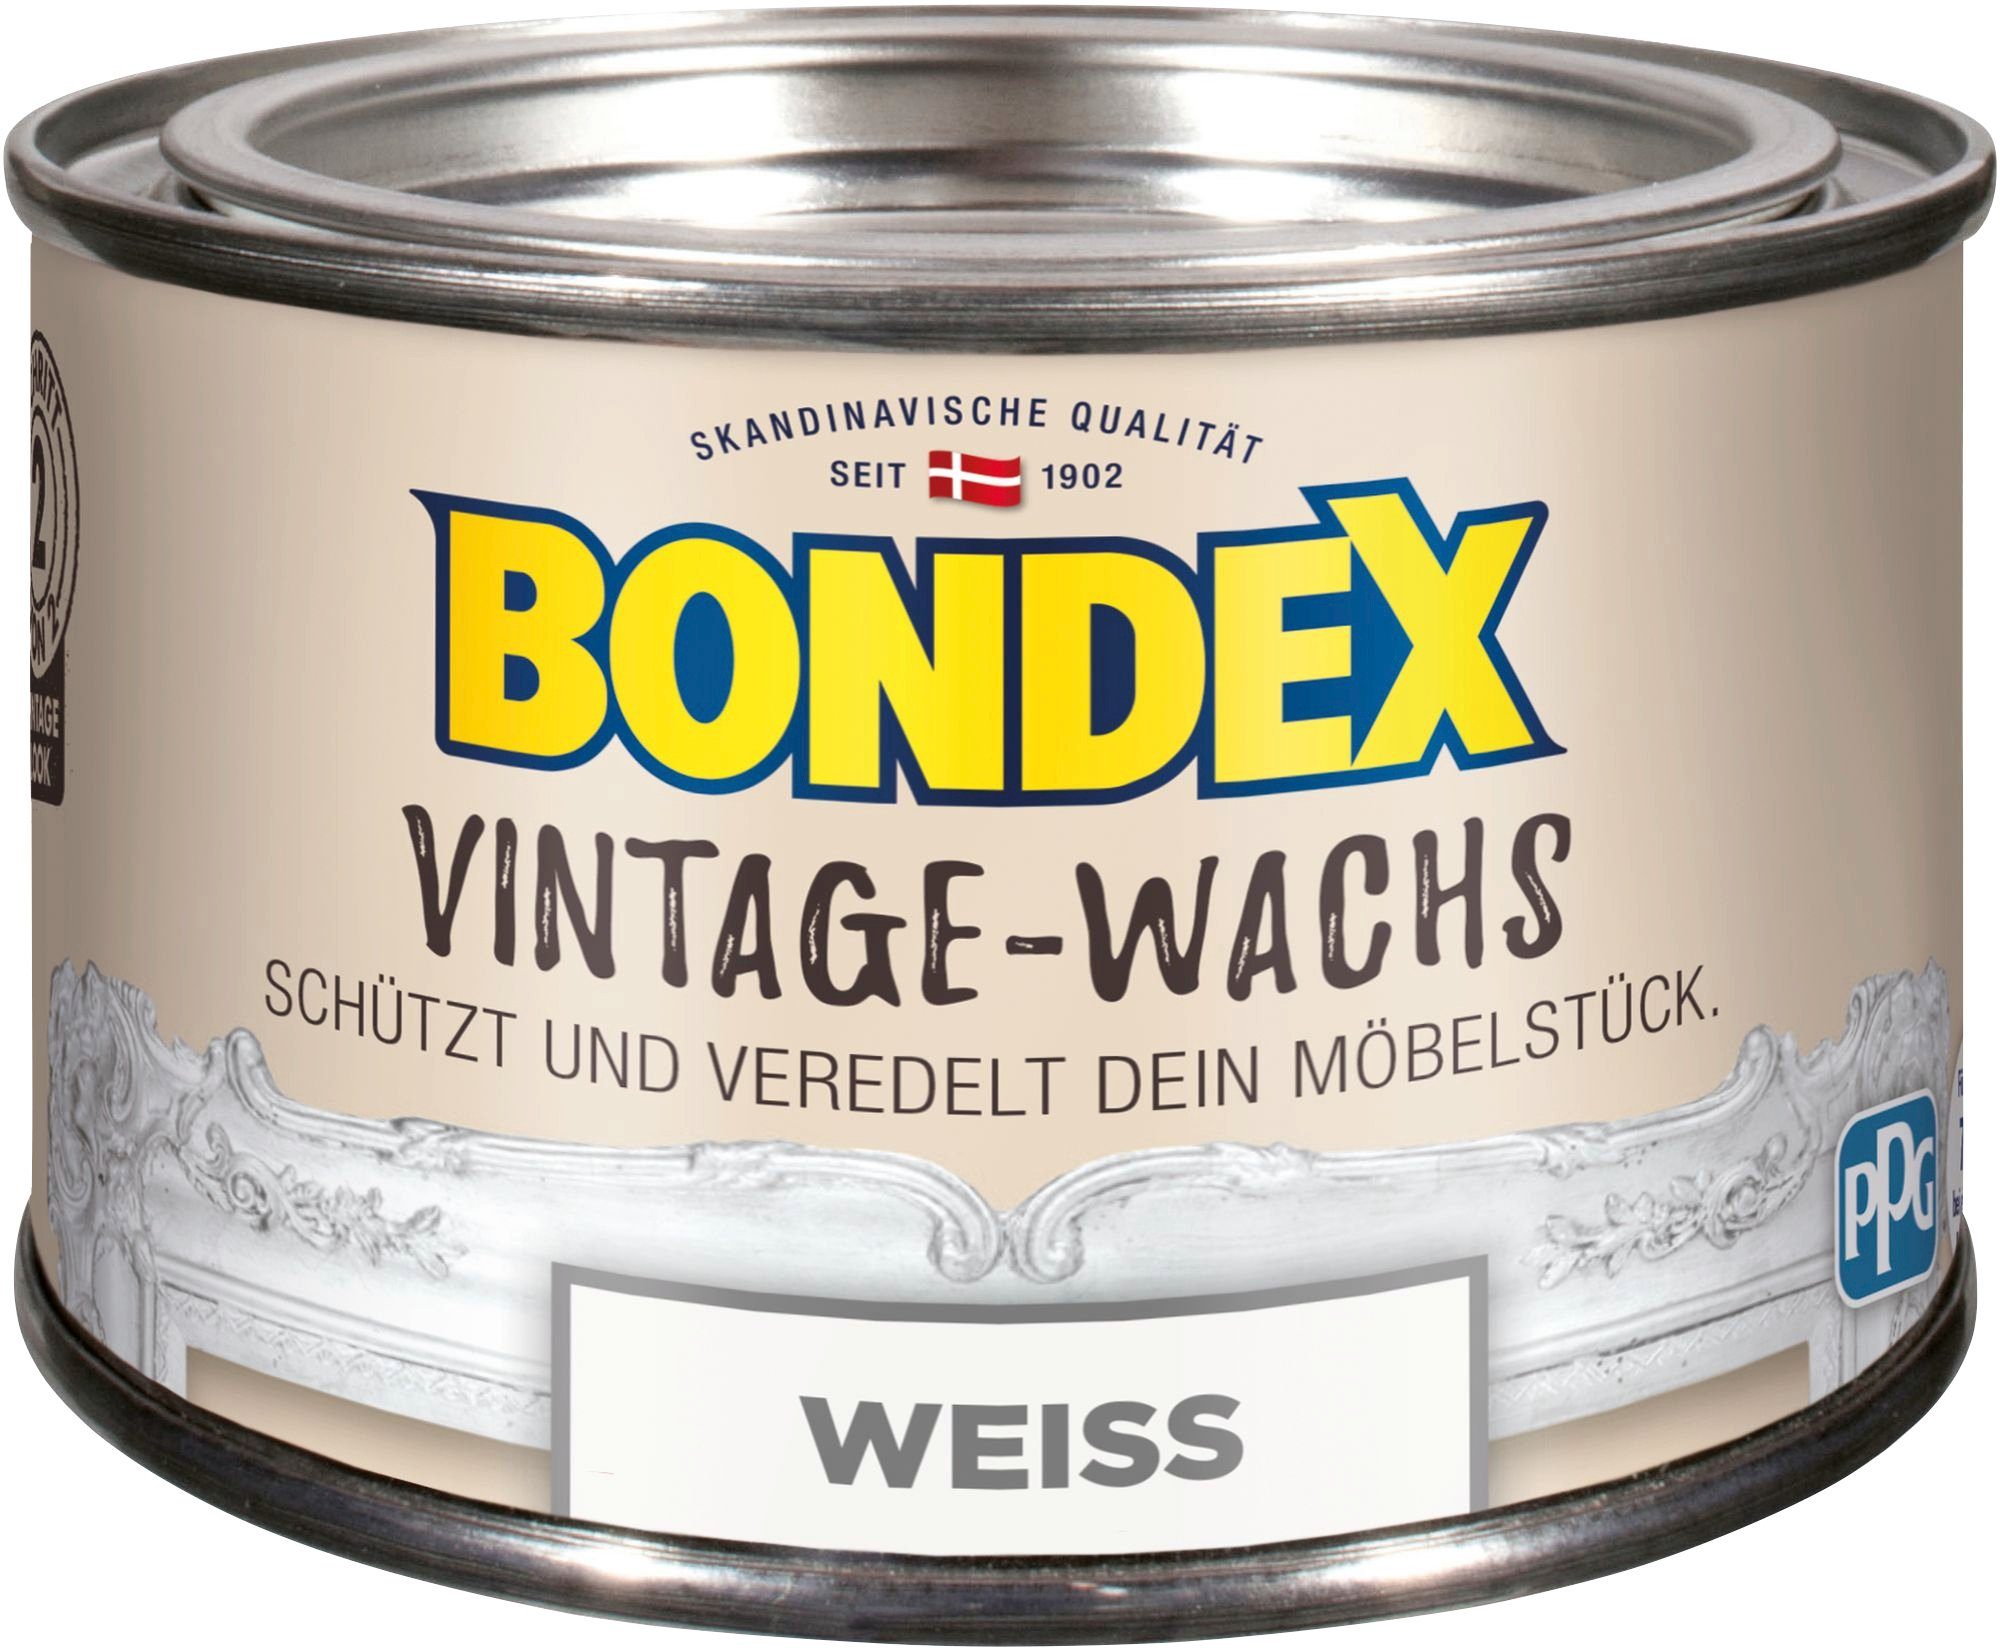 Bondex VINTAGE-WACHS Grau Schutzwachs, zum Schutz und Veredelung der Möbelstücke, 0,25 l weiß